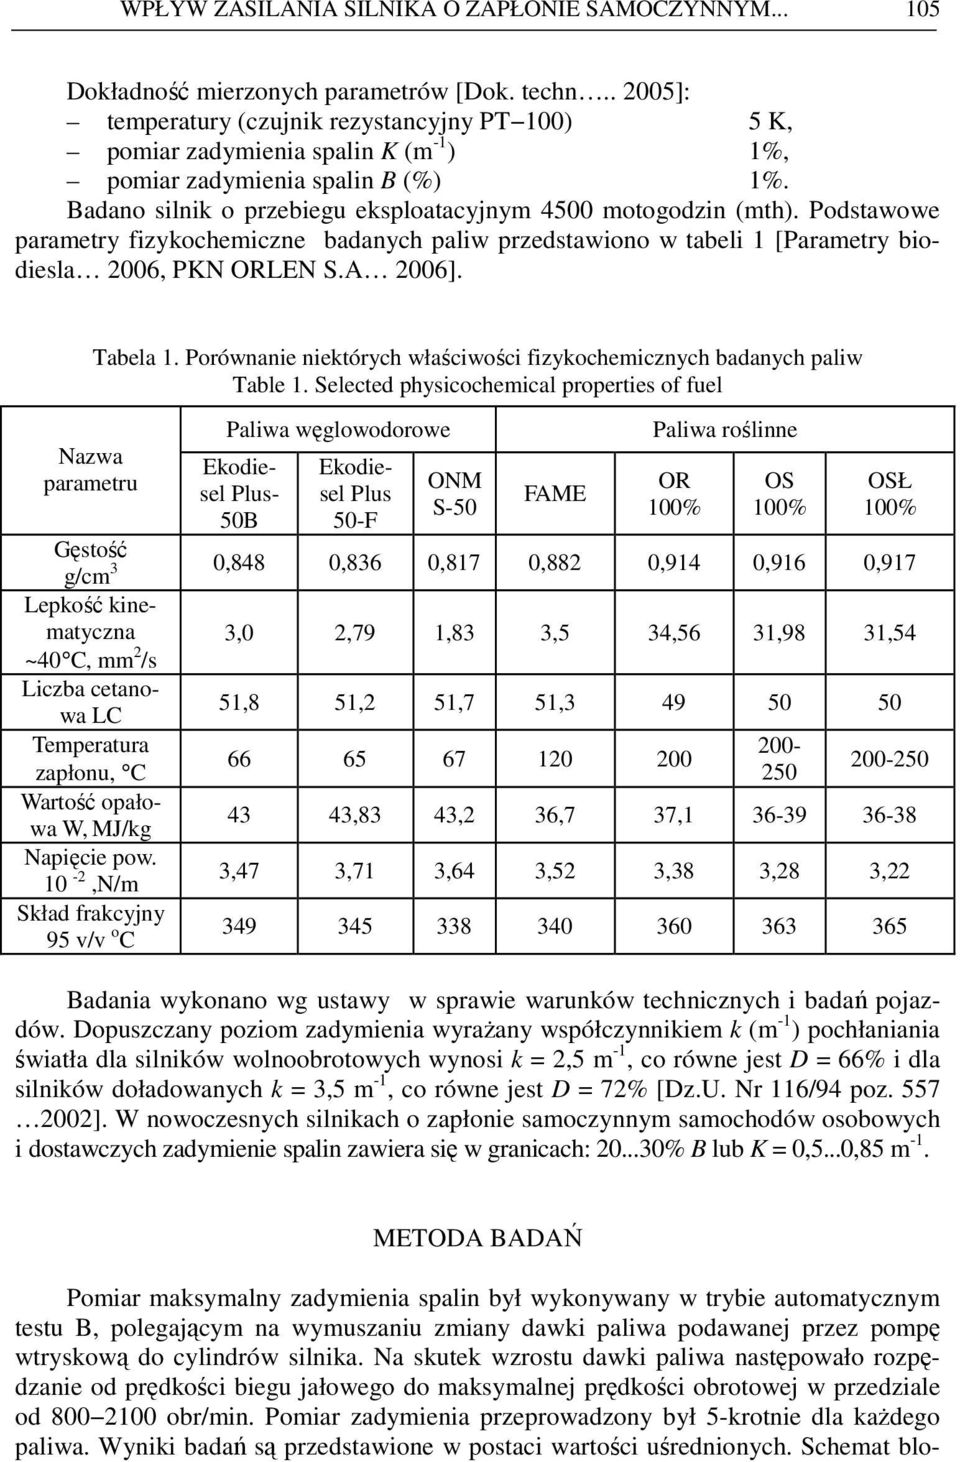 Podstawowe parametry fizykochemiczne badanych paliw przedstawiono w tabeli 1 [Parametry biodiesla 2006, PKN ORLEN S.A 2006]. Nazwa parametru Tabela 1.